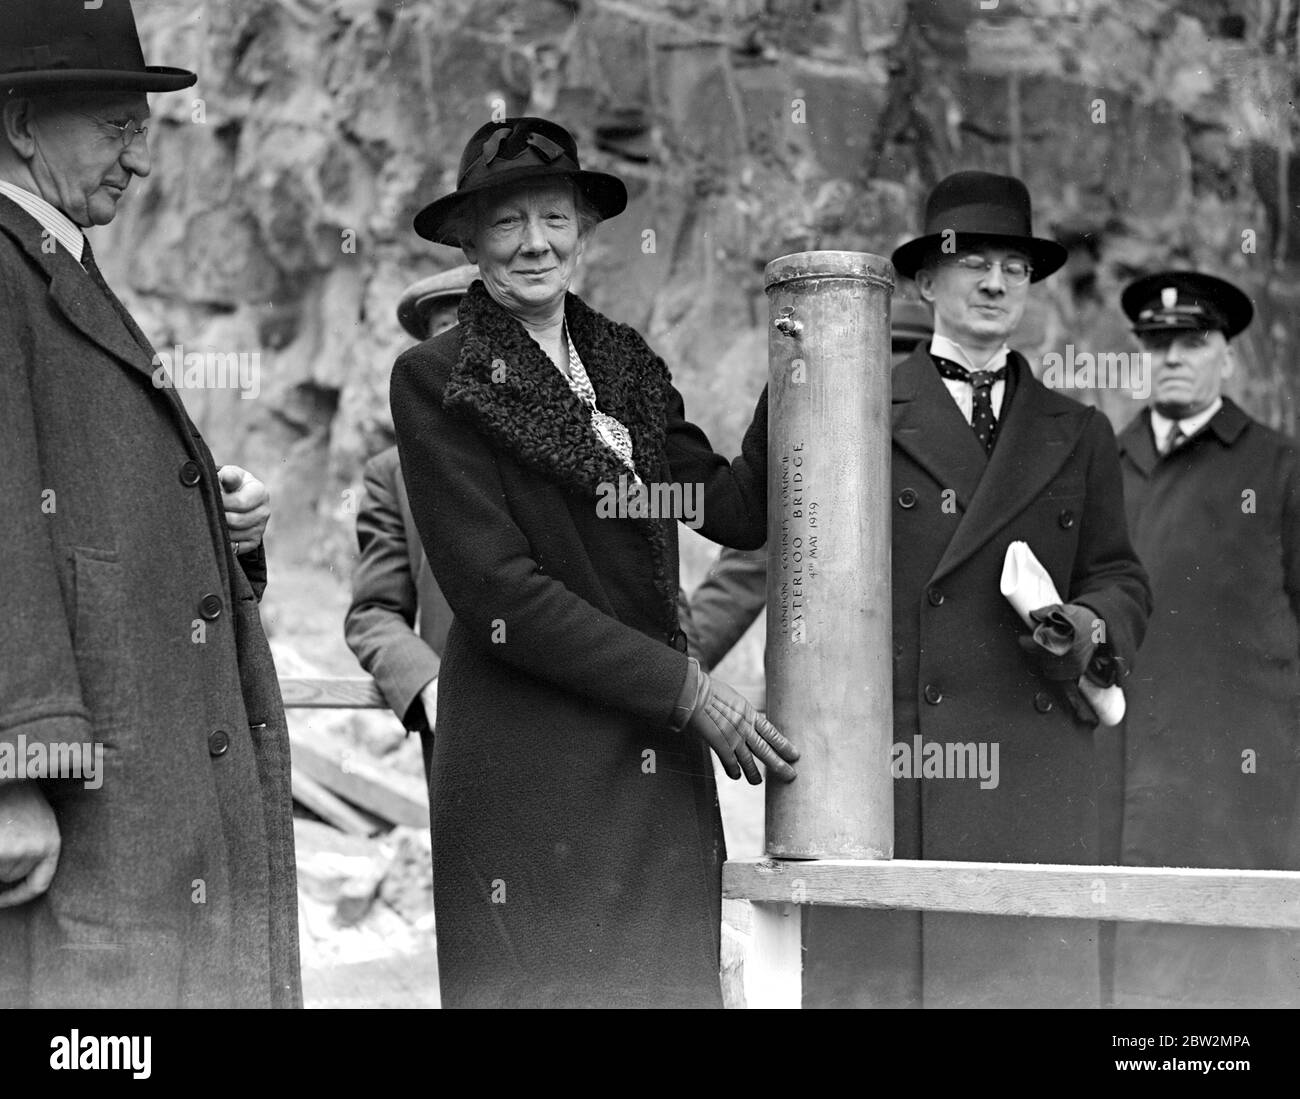 Waterloo Bridge , reliquie per il futuro. Sig.ra M. lowe, L.C.C. Presidente, ha posto un cilindro contenente alcuni articoli del momento nelle fondamenta della nuova struttura. 4 maggio 1939. Foto Stock